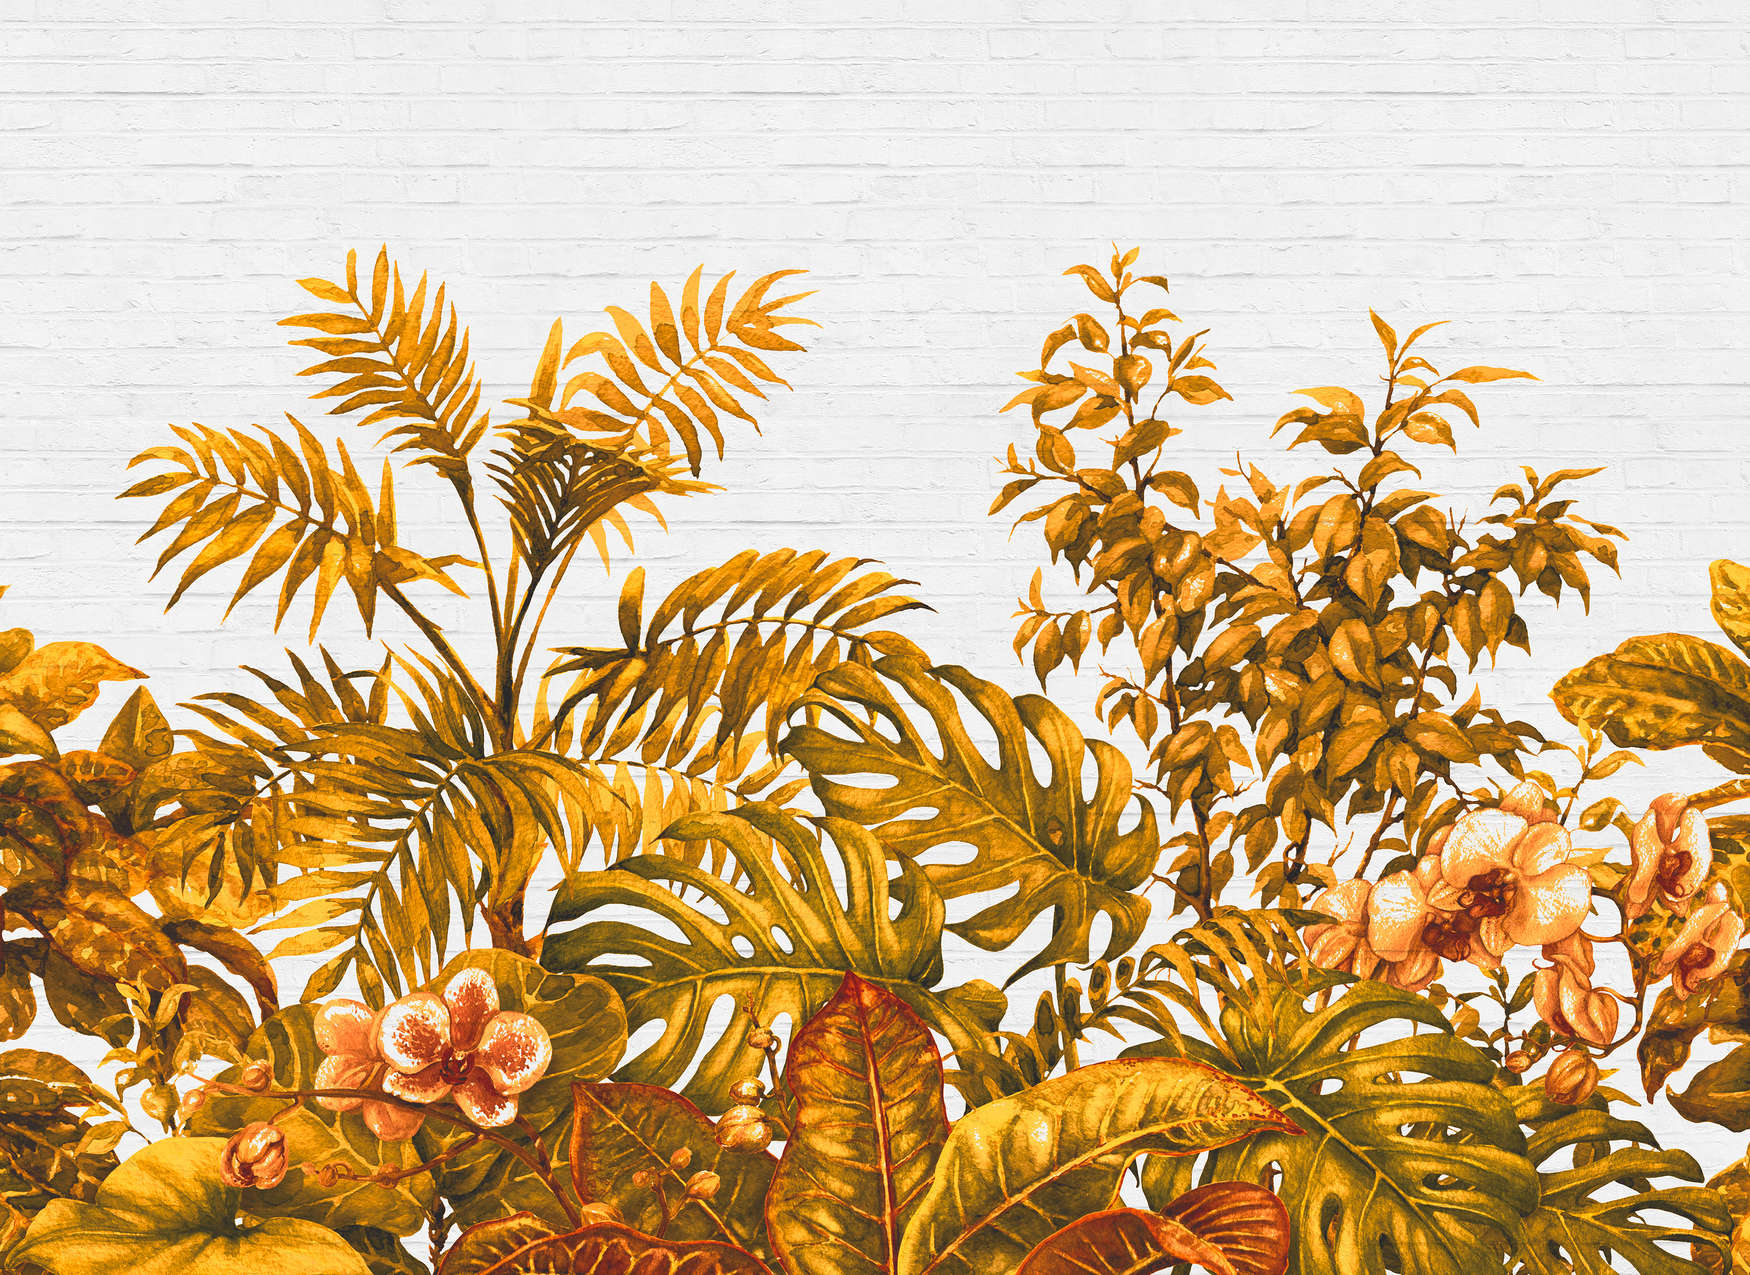             Fototapete Dschungelpflanzen & Steinwand – Orange, Weiß
        